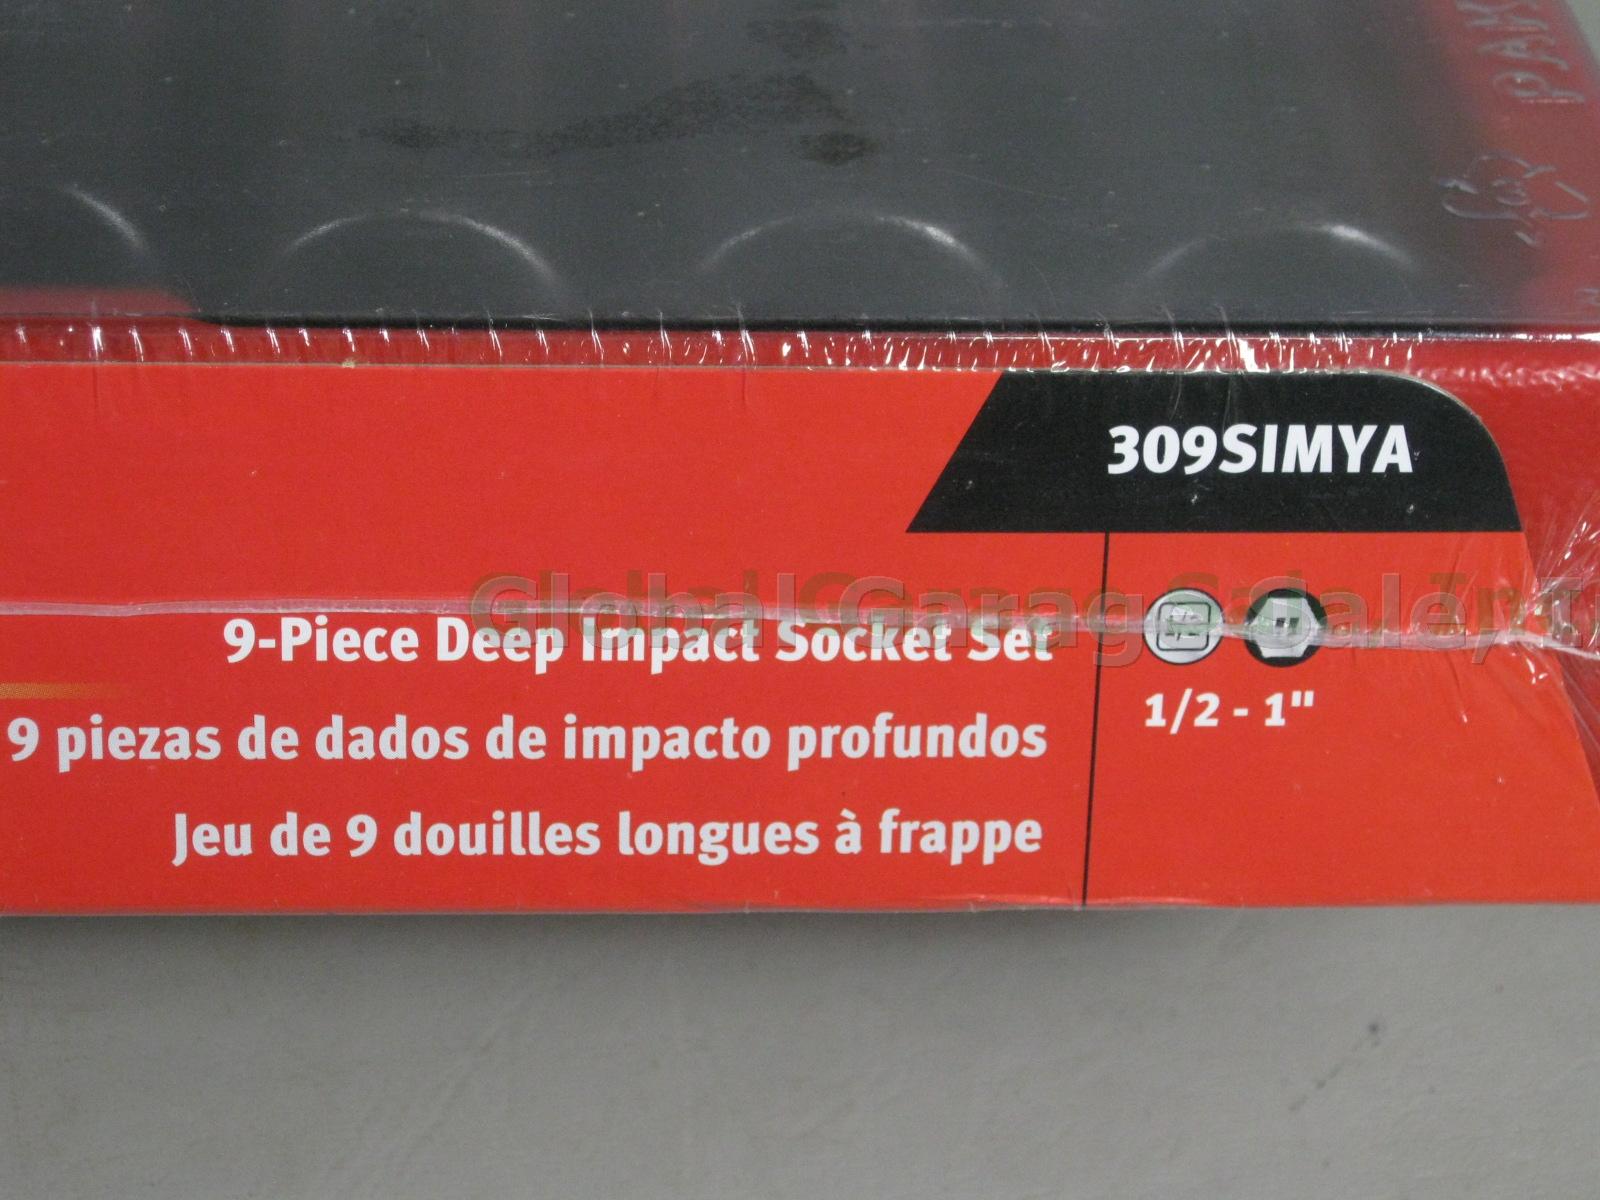 NEW Sealed Snap-On 9-Piece Deep Impact Socket Set 1/2"-1" 309SIMYA No Reserve! 1